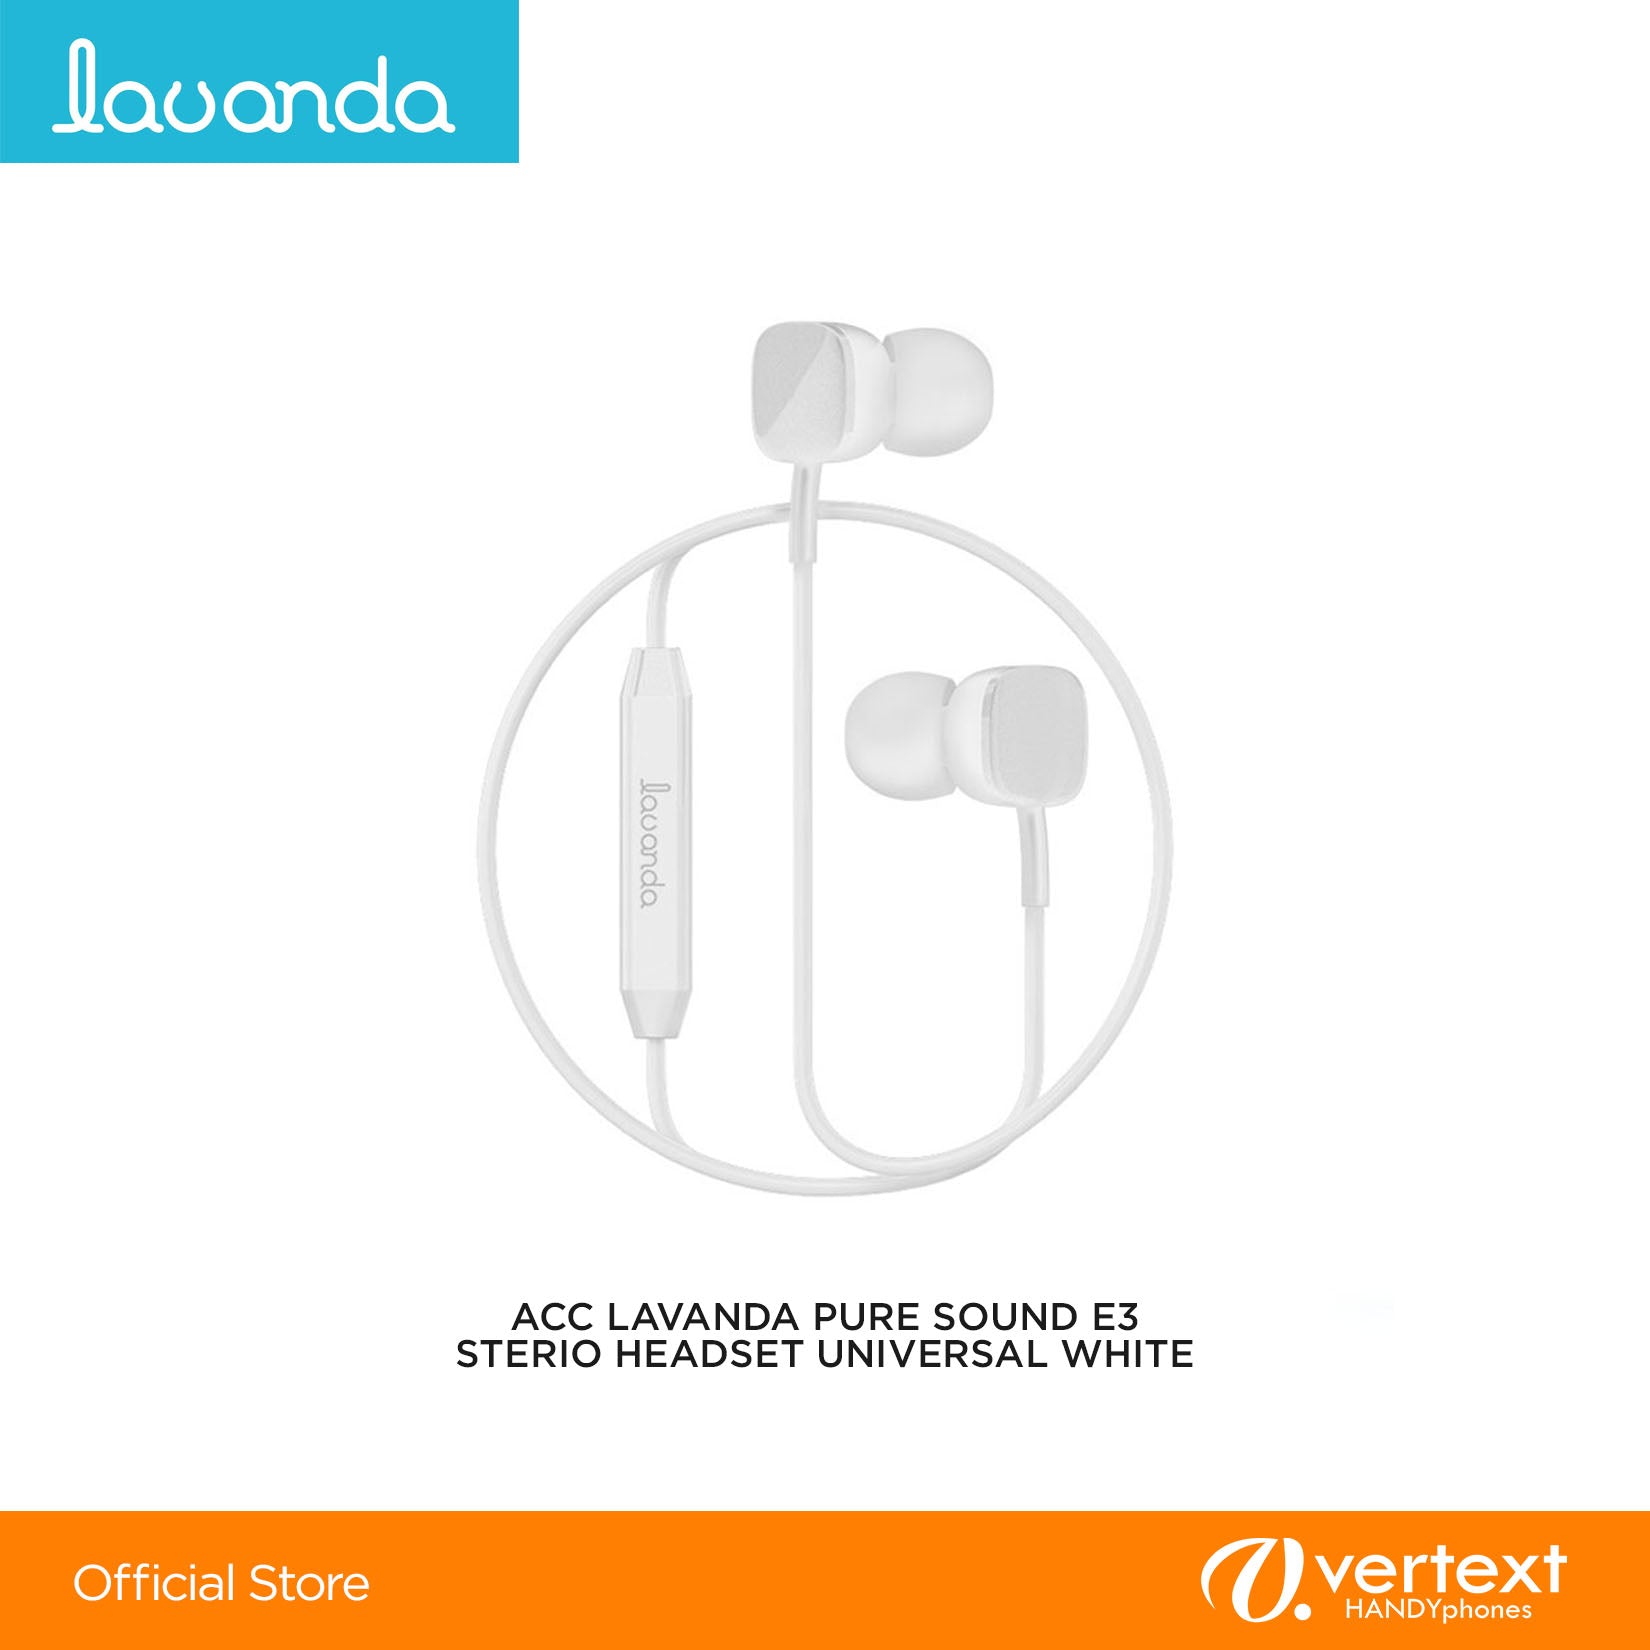 Lavanda Pure Sound E3 Sterio Headset Universal White